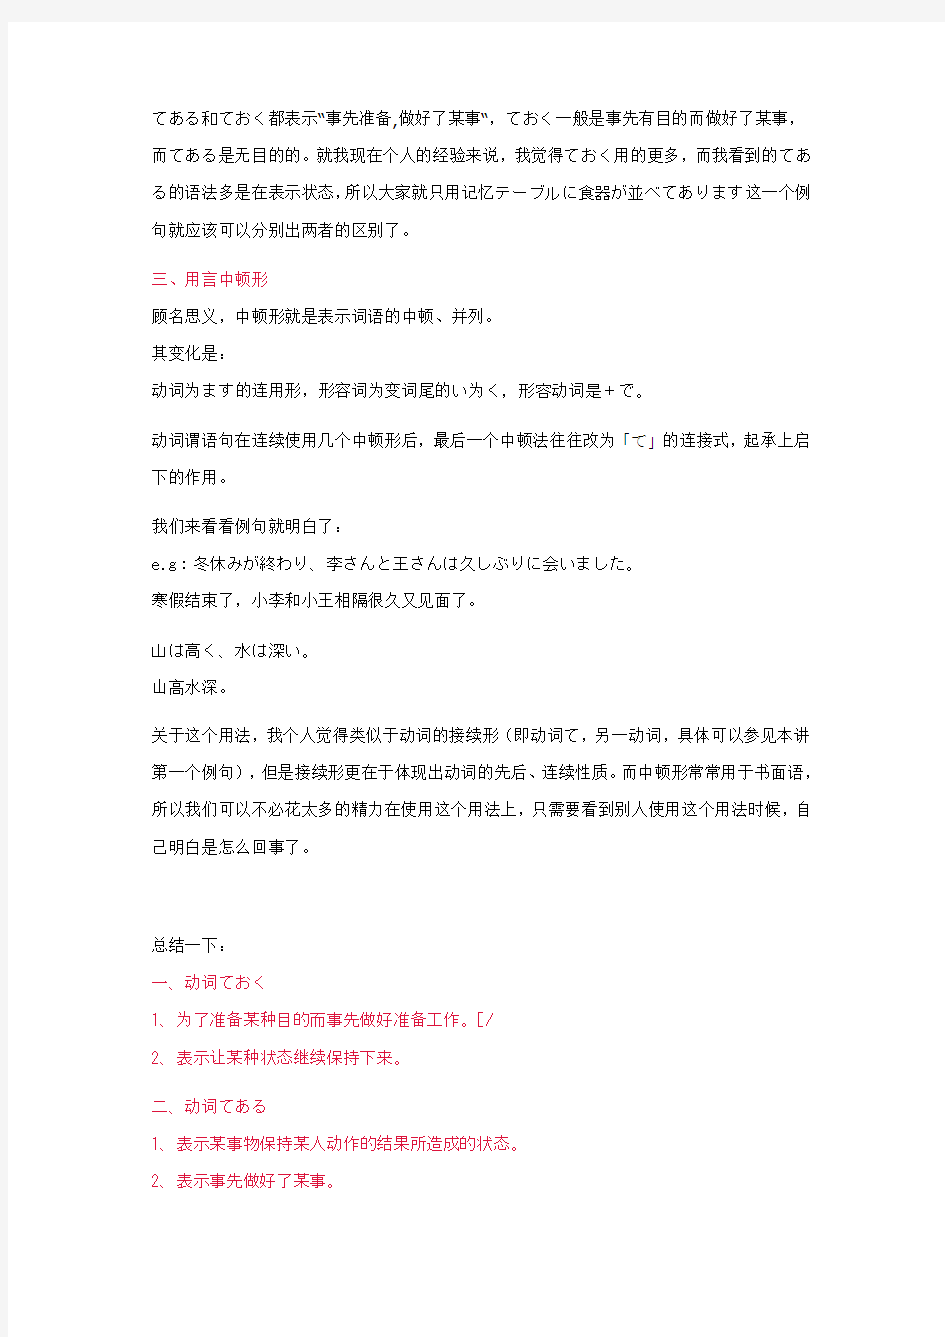 新编日语-第二册语法全面整理